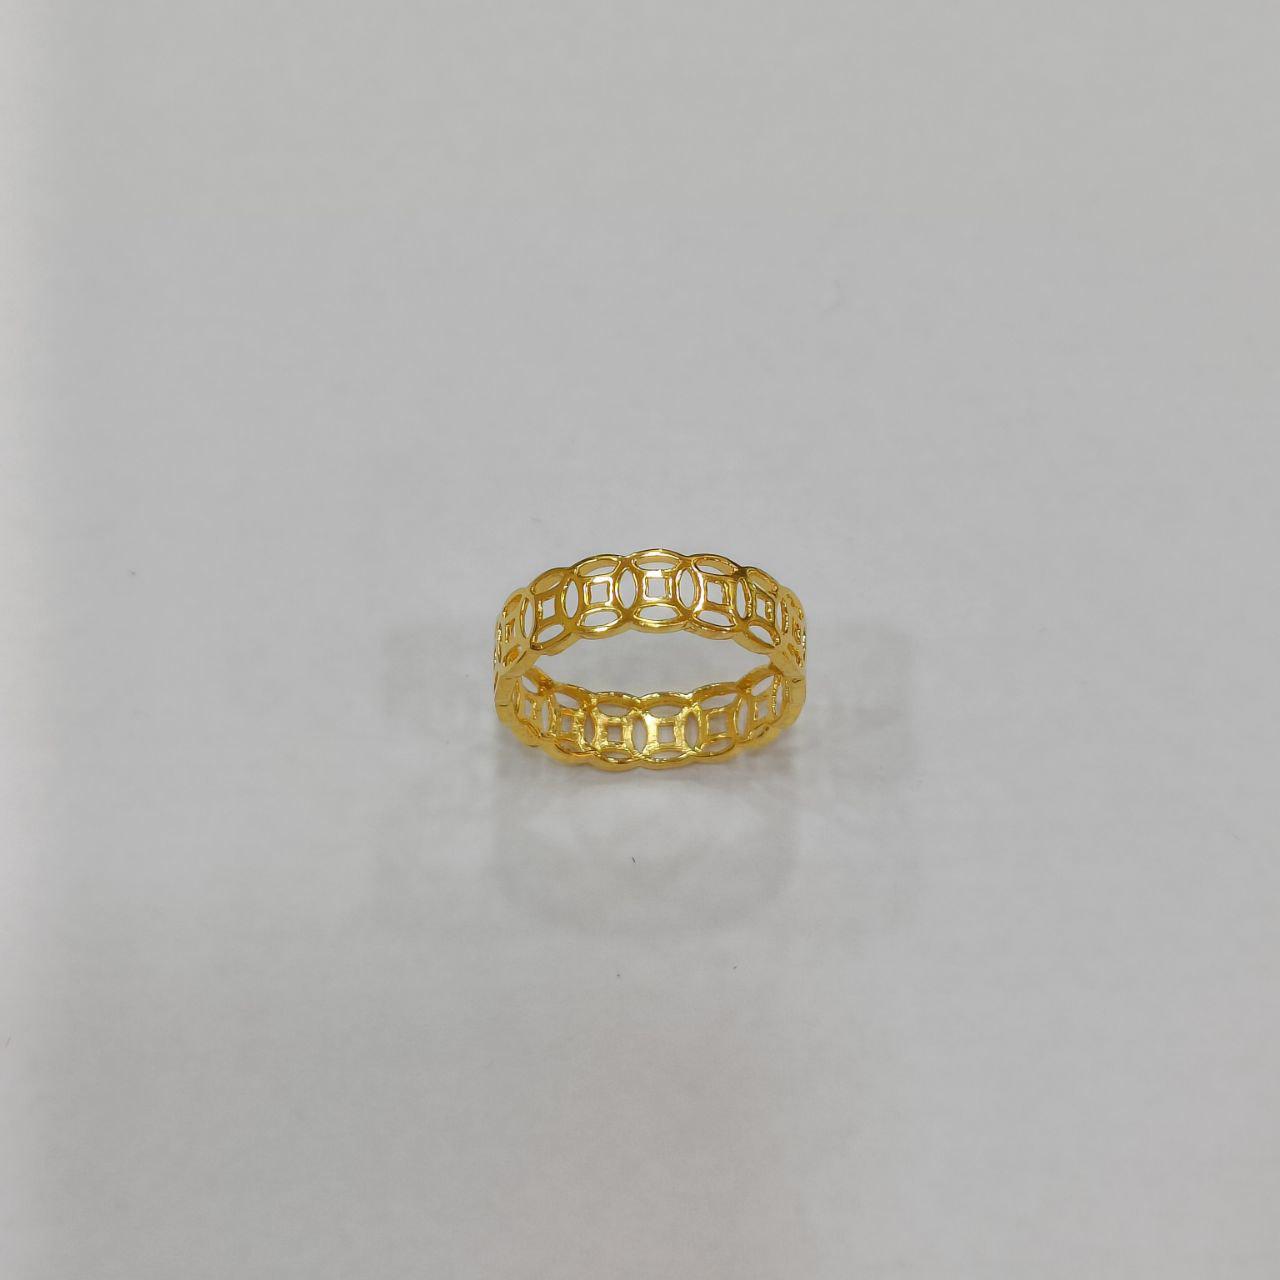 22k / 916 Gold Coin Ring v2-916 gold-Best Gold Shop